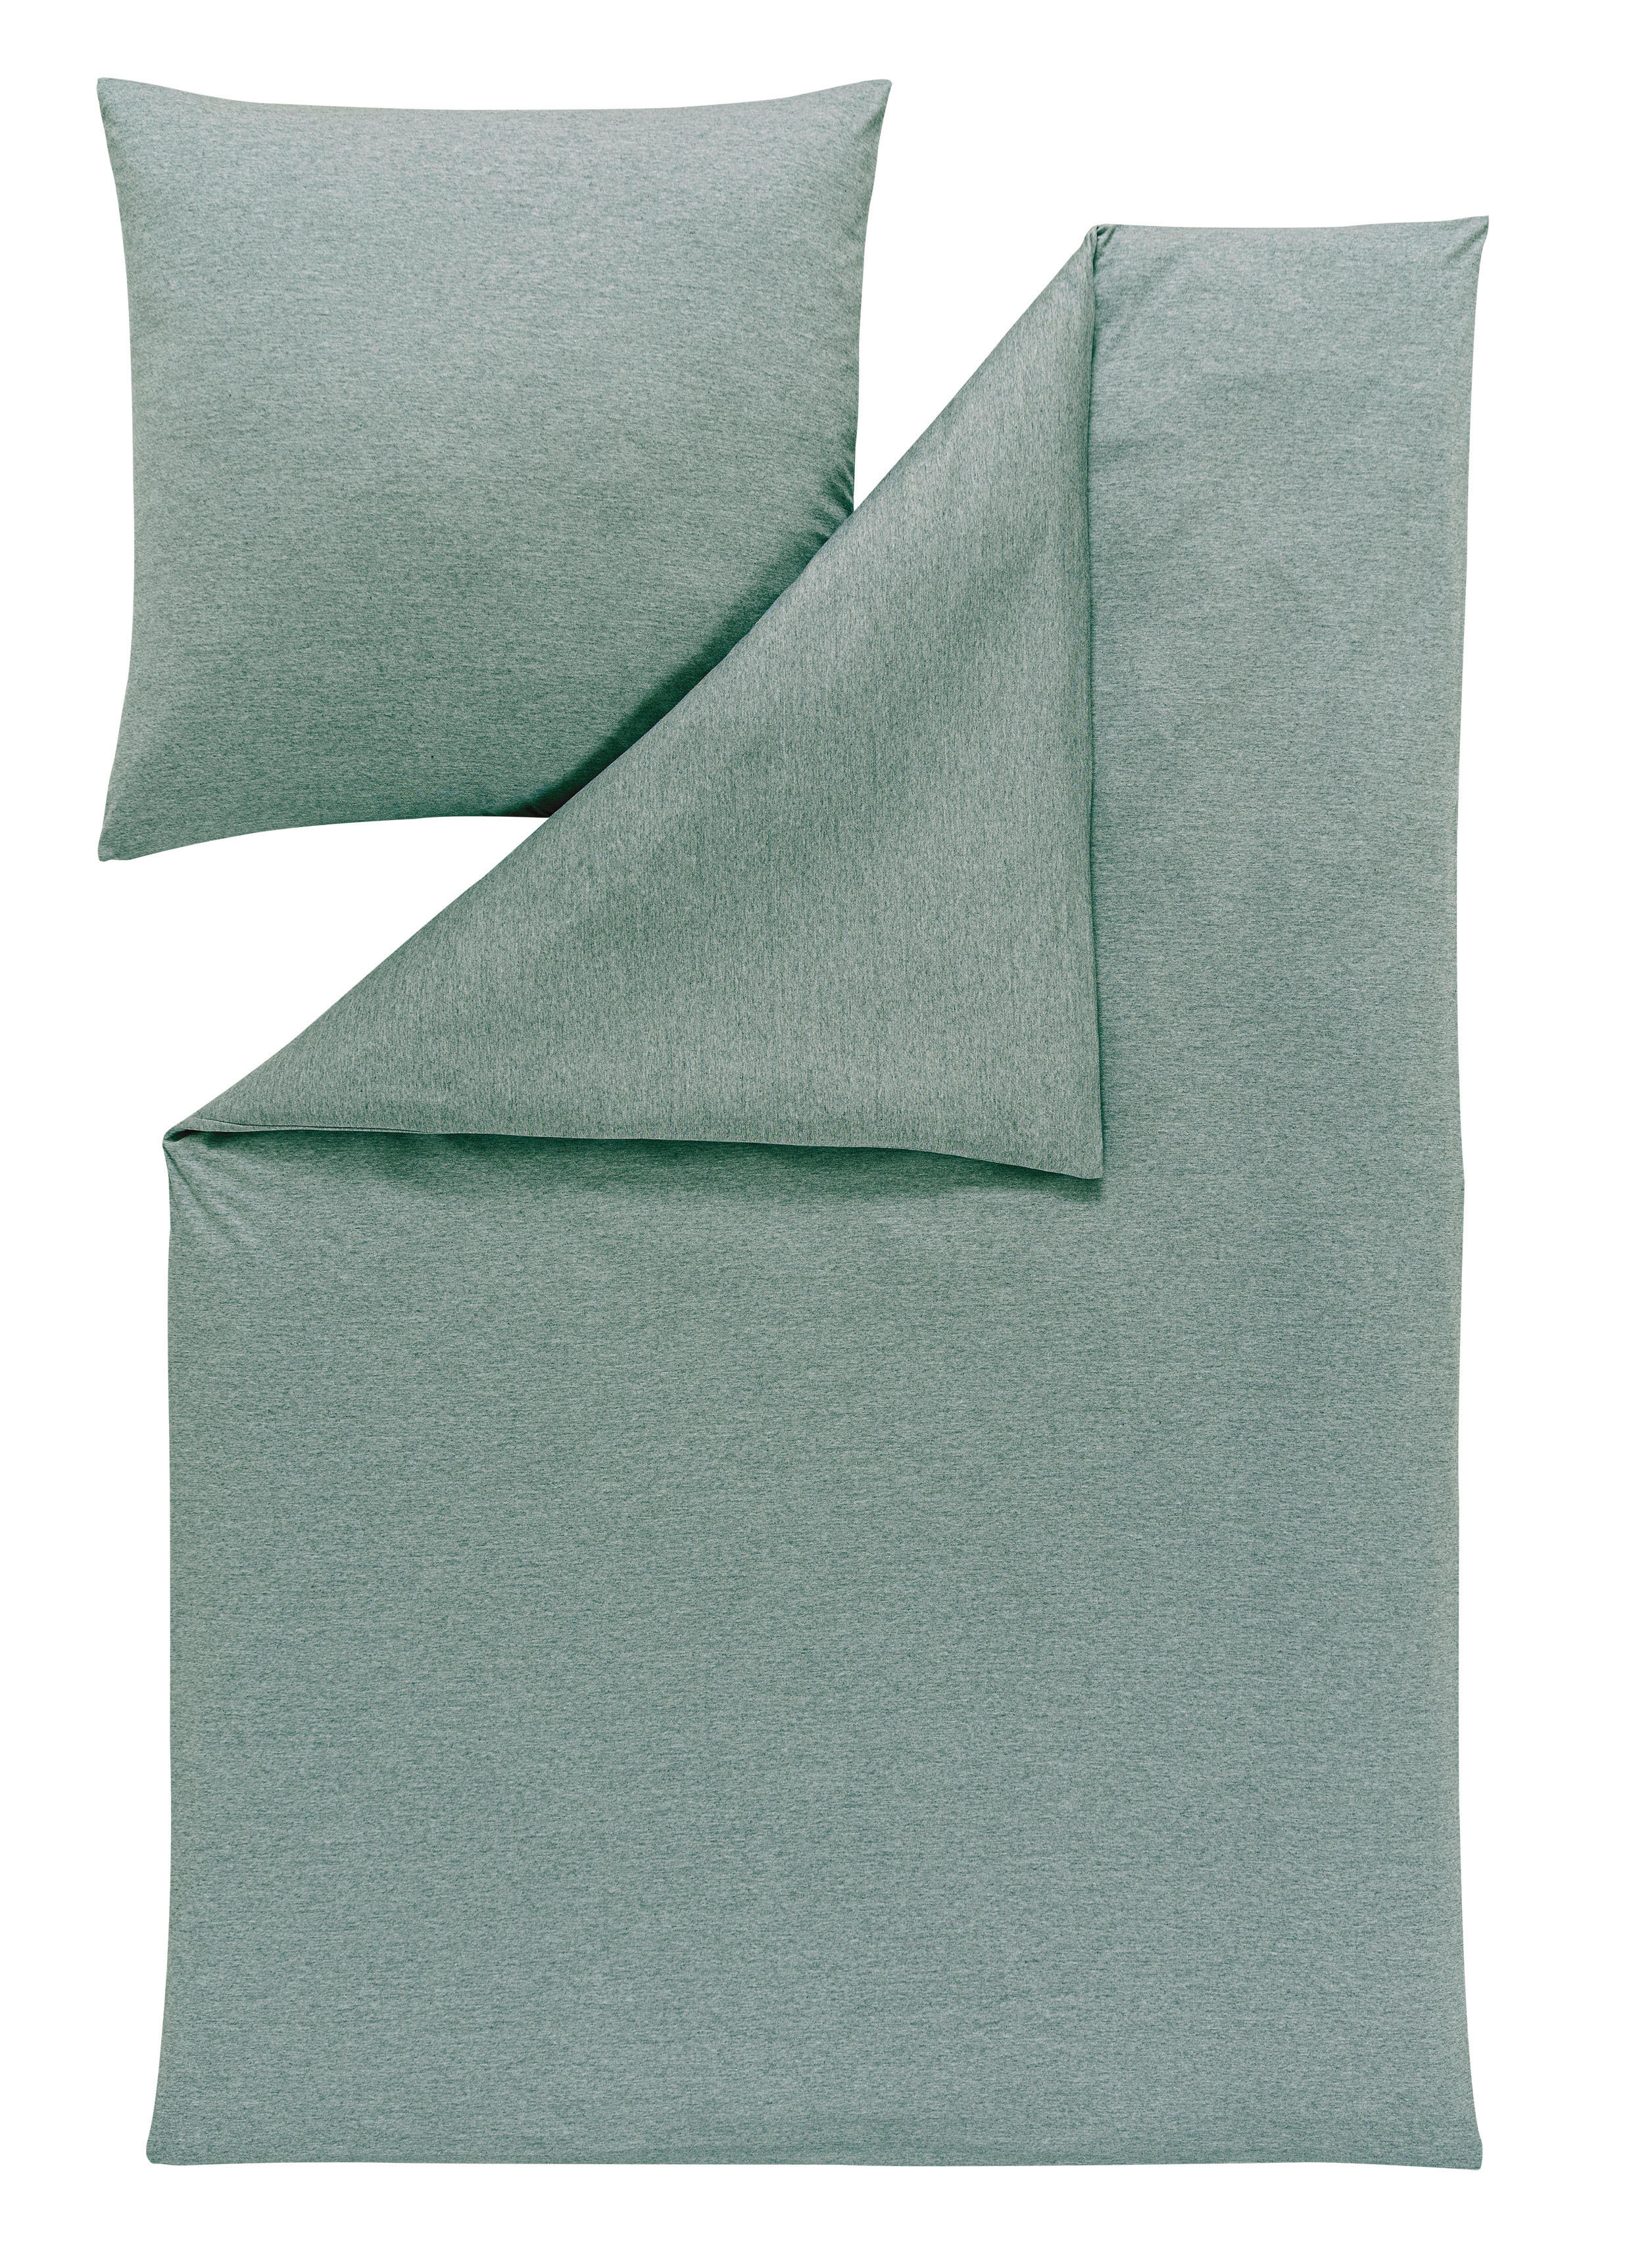 BETTWÄSCHE TAKOMA Interlock-Jersey  - Mintgrün, Basics, Textil (135/200cm) - Estella